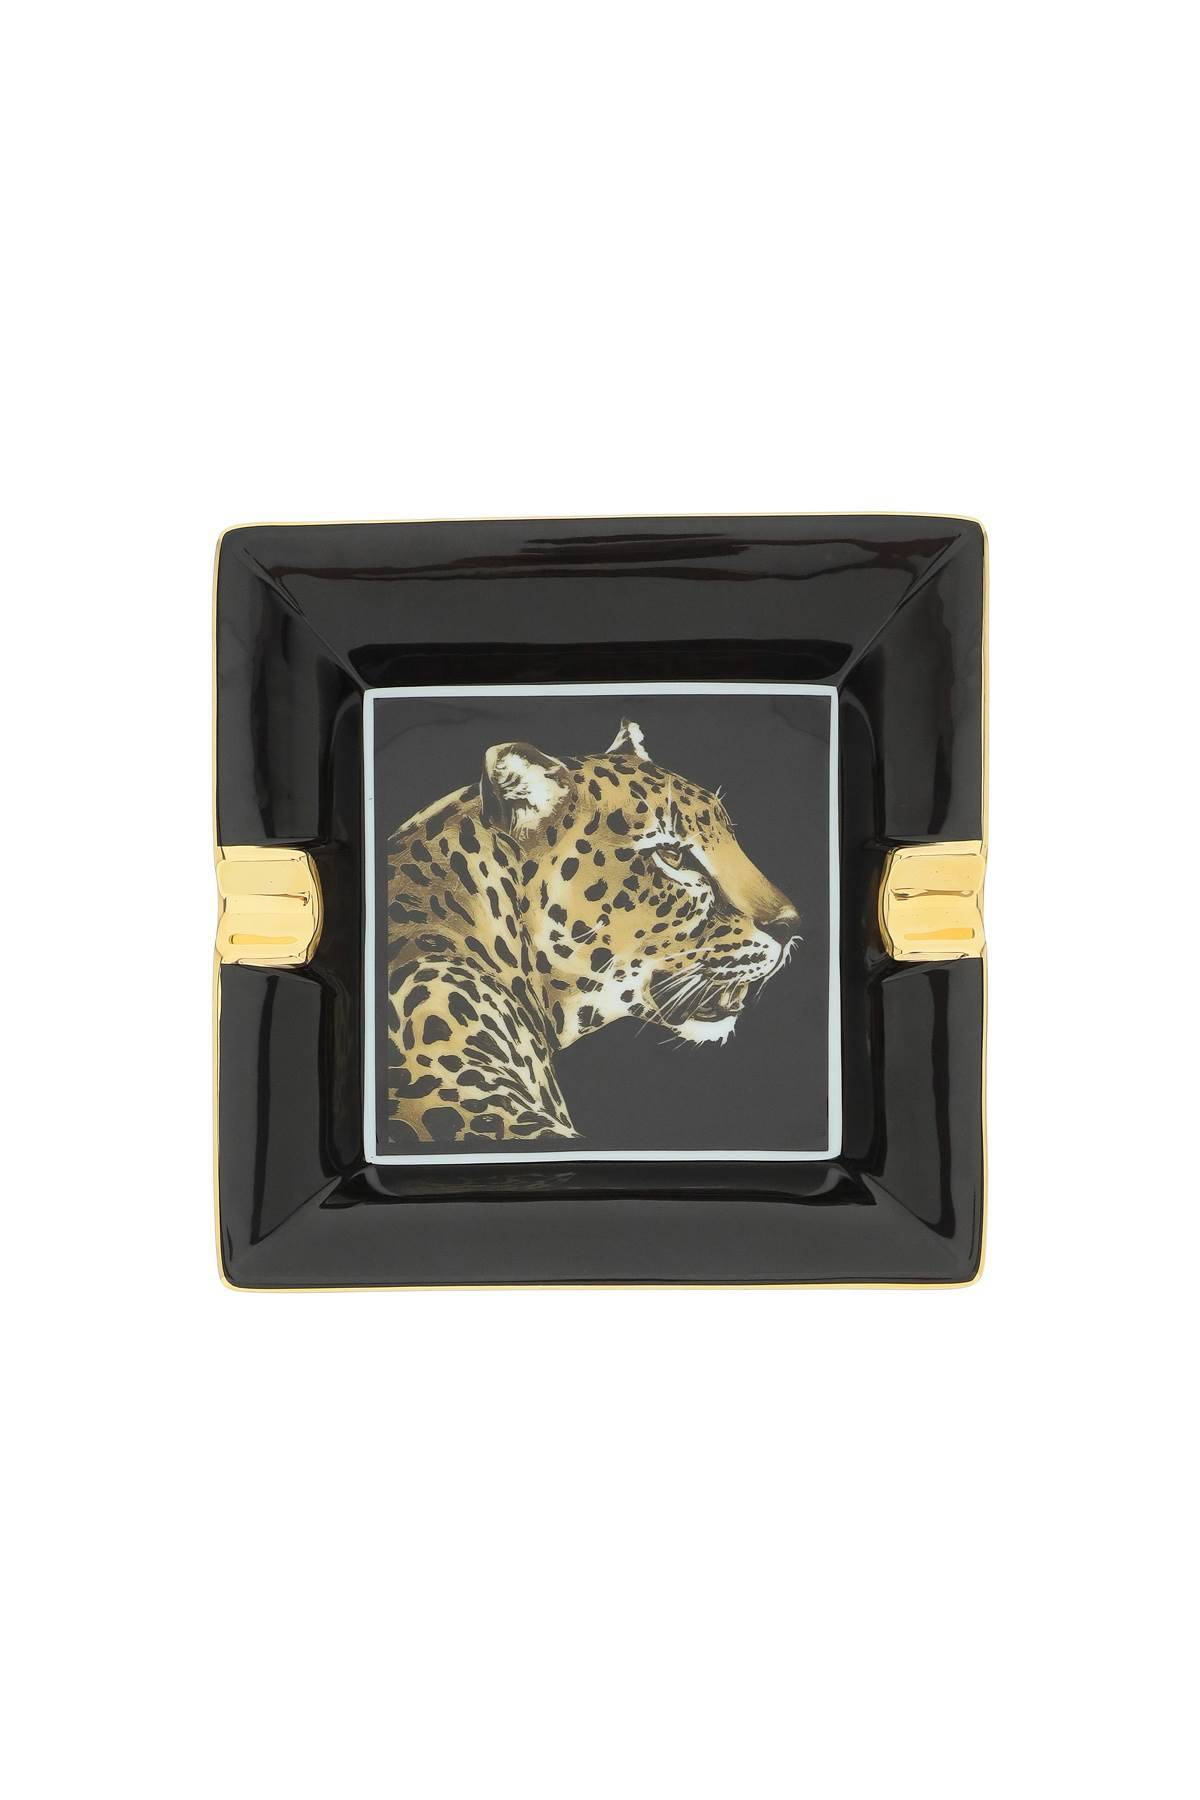 Dolce & Gabbana DOLCE & GABBANA ashtrat 18 x 18 cm - leopard